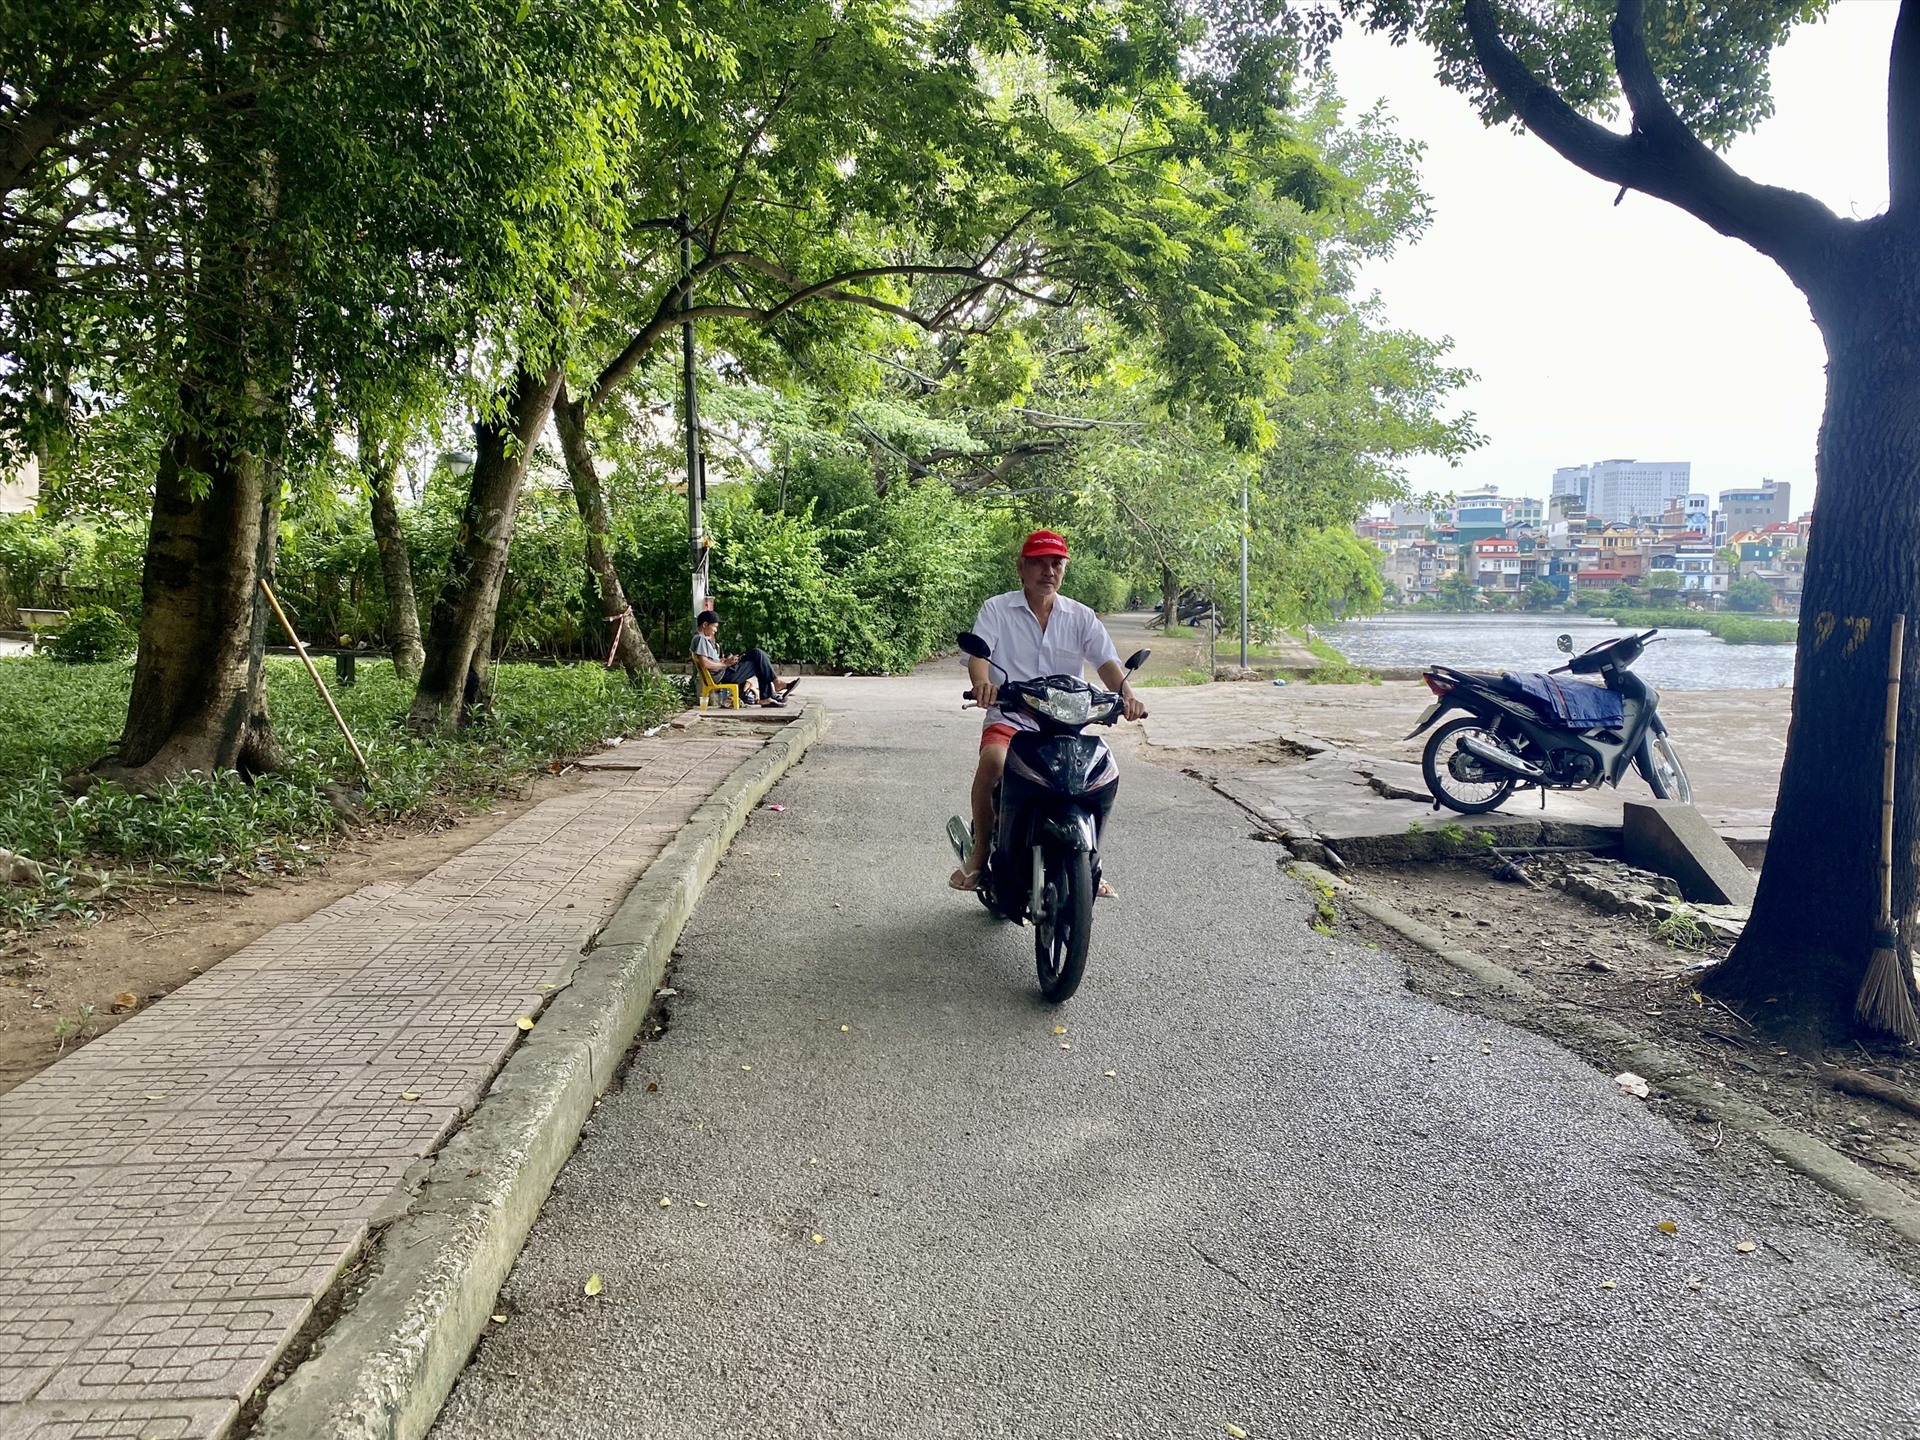 Người đi bộ và xe máy chung một lối đi. Ảnh: Vĩnh Hoàng